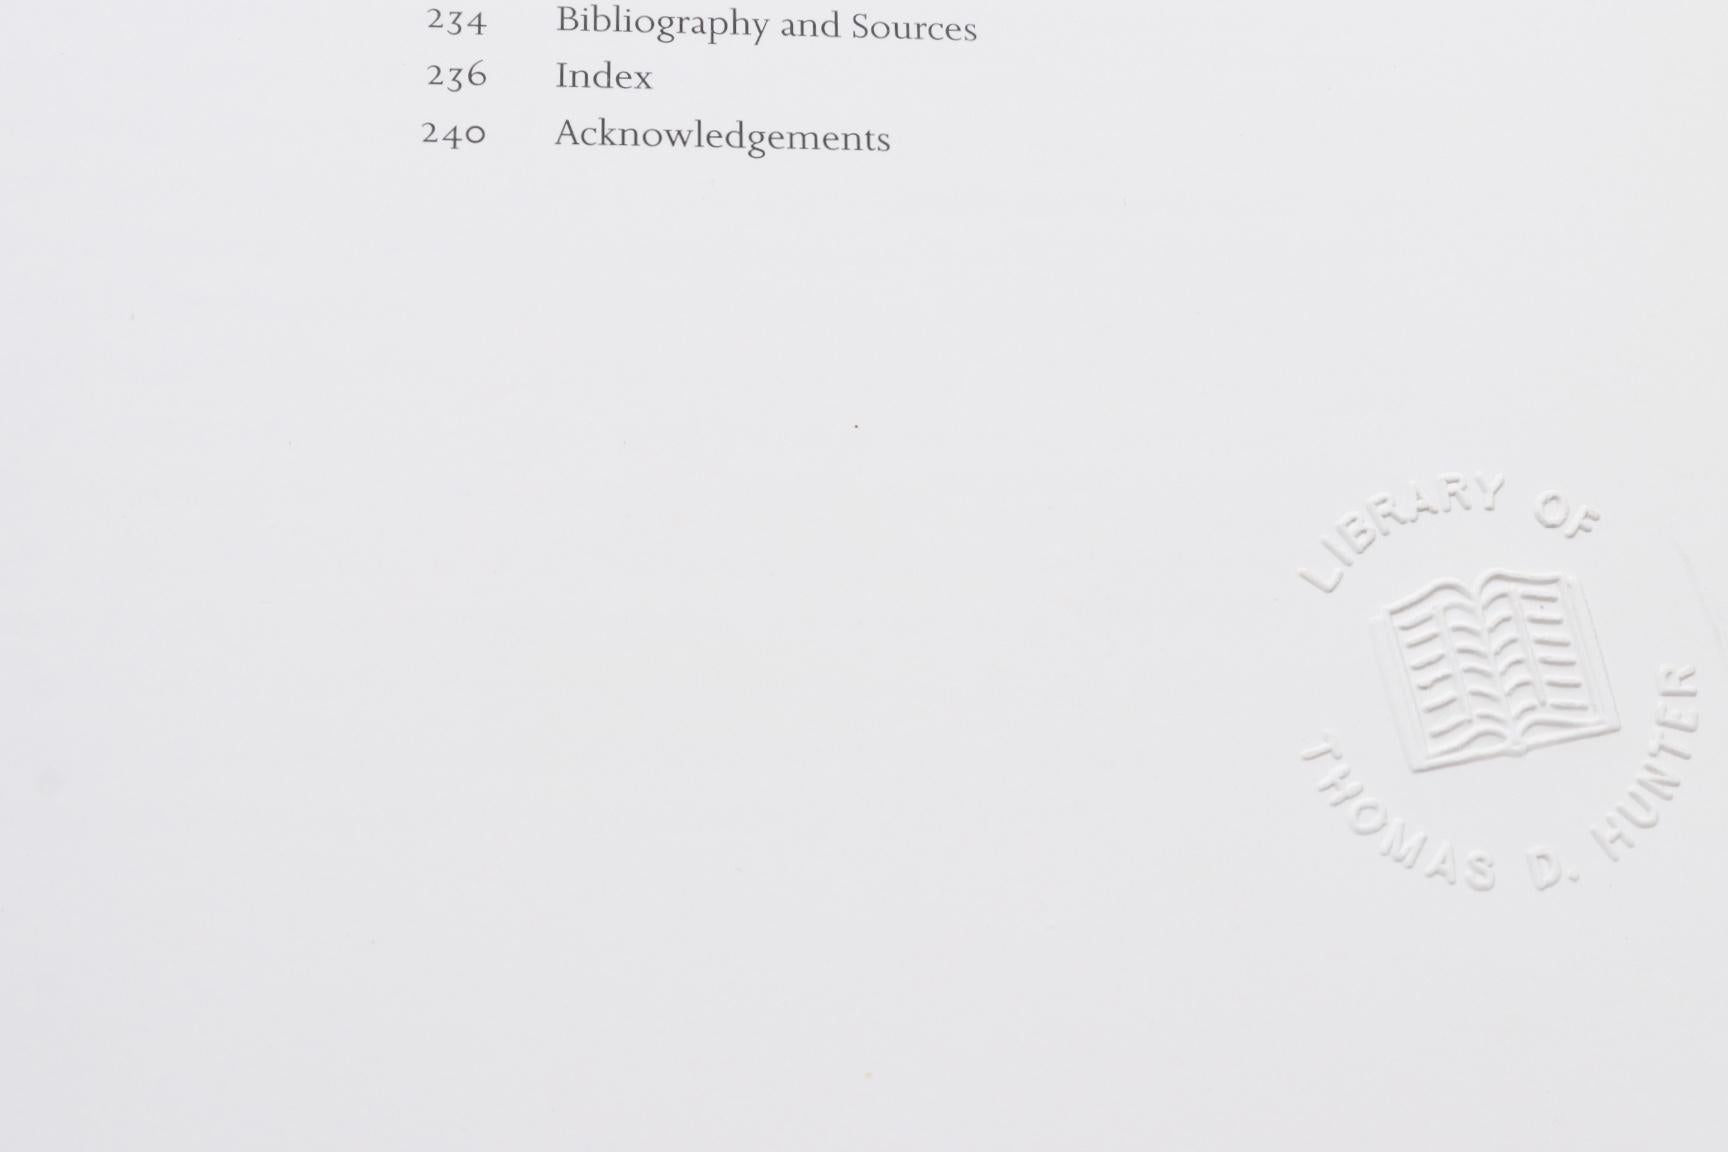 Le carreau décoratif dans l'architecture et les intérieurs. Livre à couverture souple avec jaquette, publié en 2000 par Phaidon Press Limited de Londres. Illustré, 240 pages.
